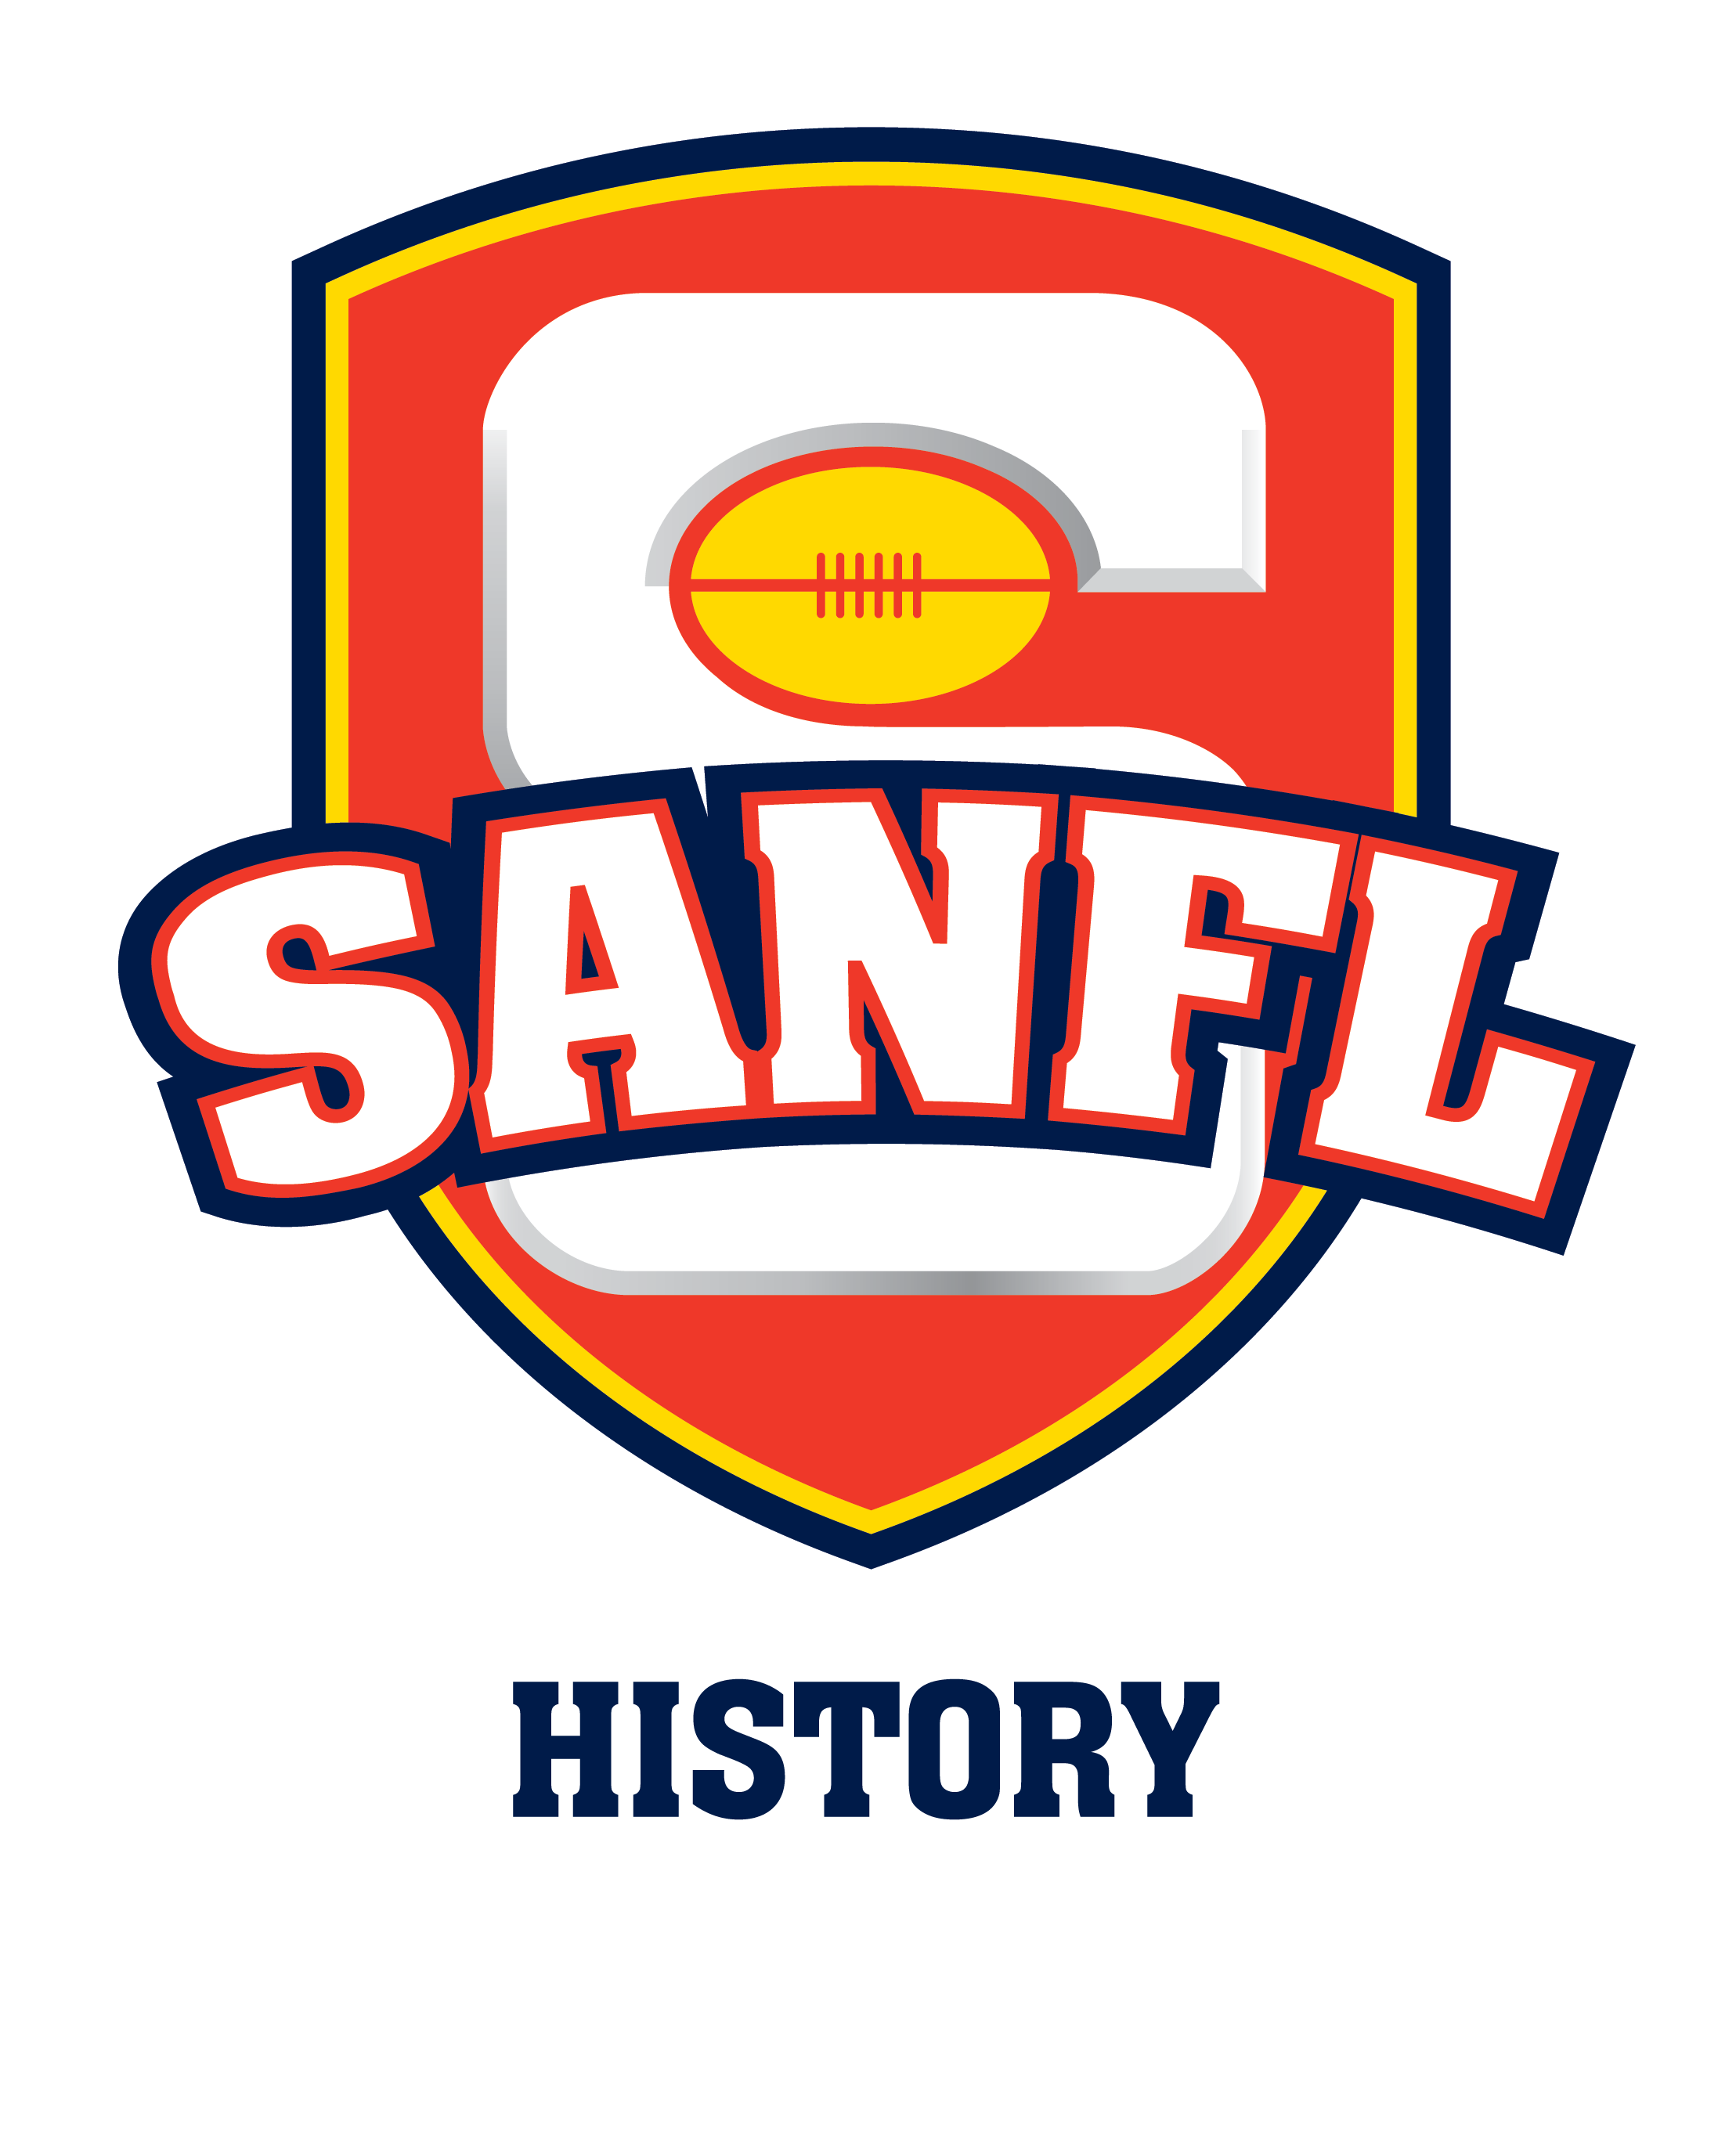 SANFL logo